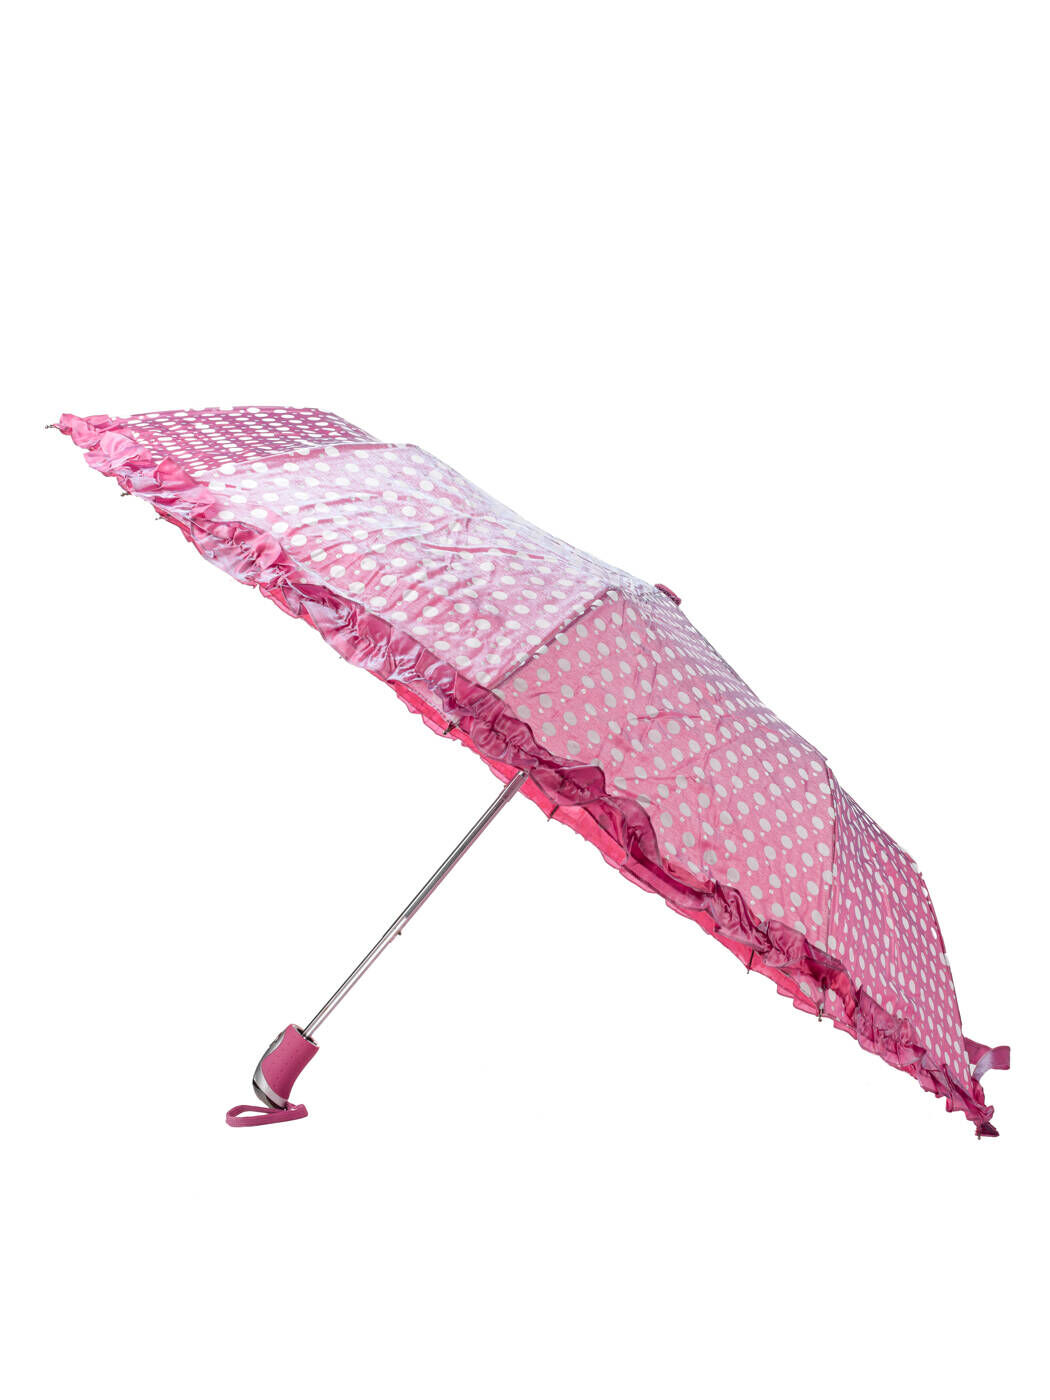 Зонт женский розовый полуавтомат